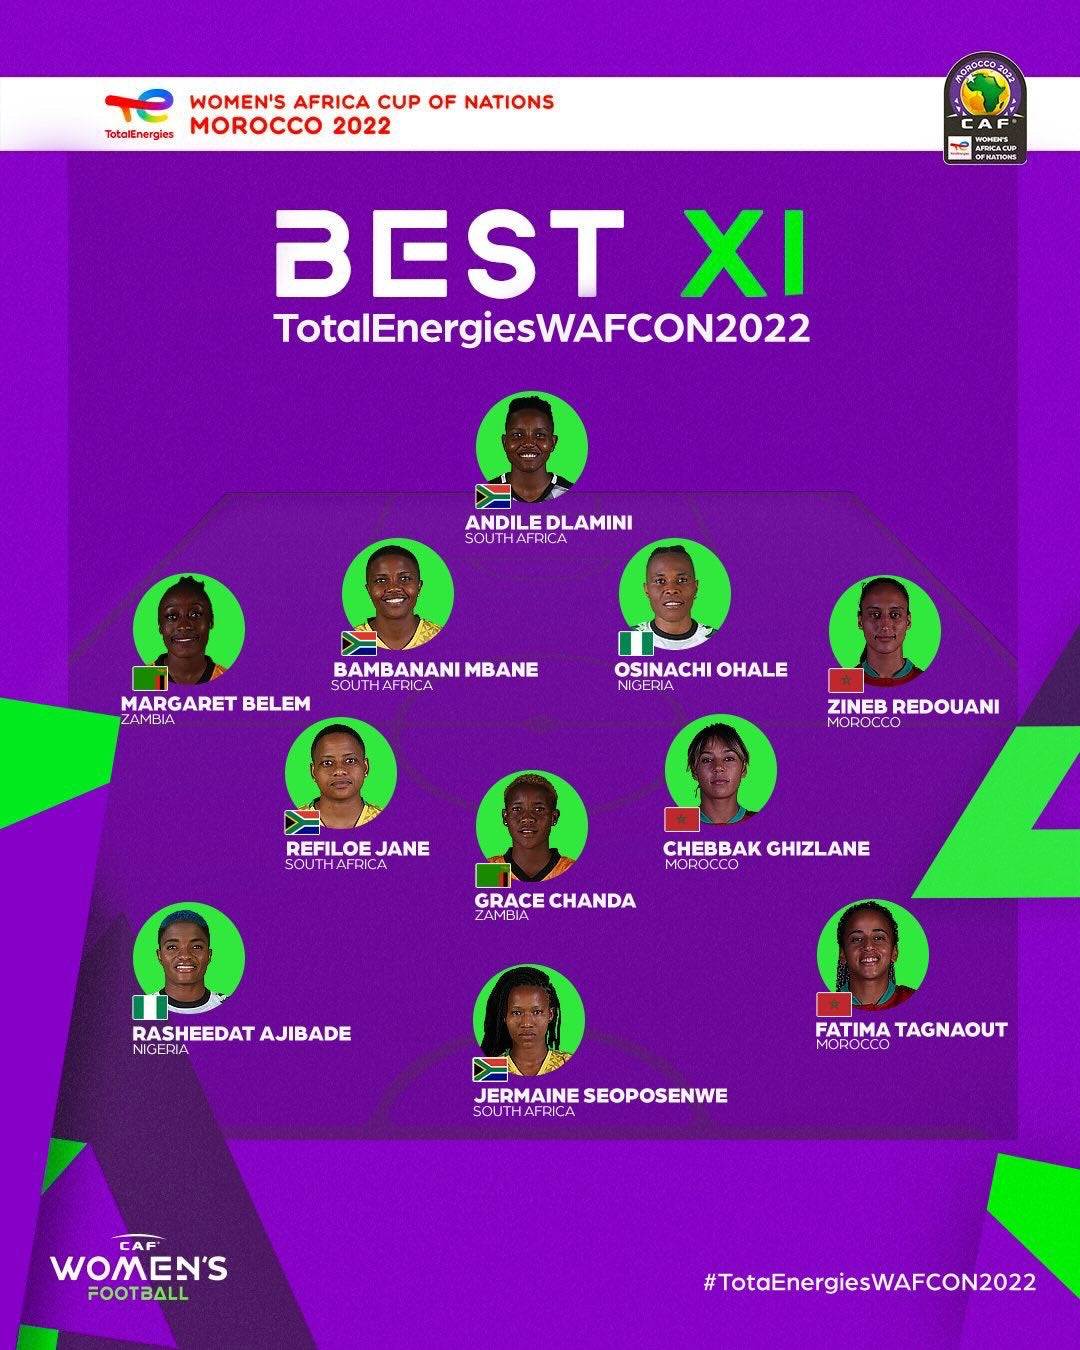 Rasheedat Ajibade and Osinachi Ohale named in WAFCON 2022 Best XI